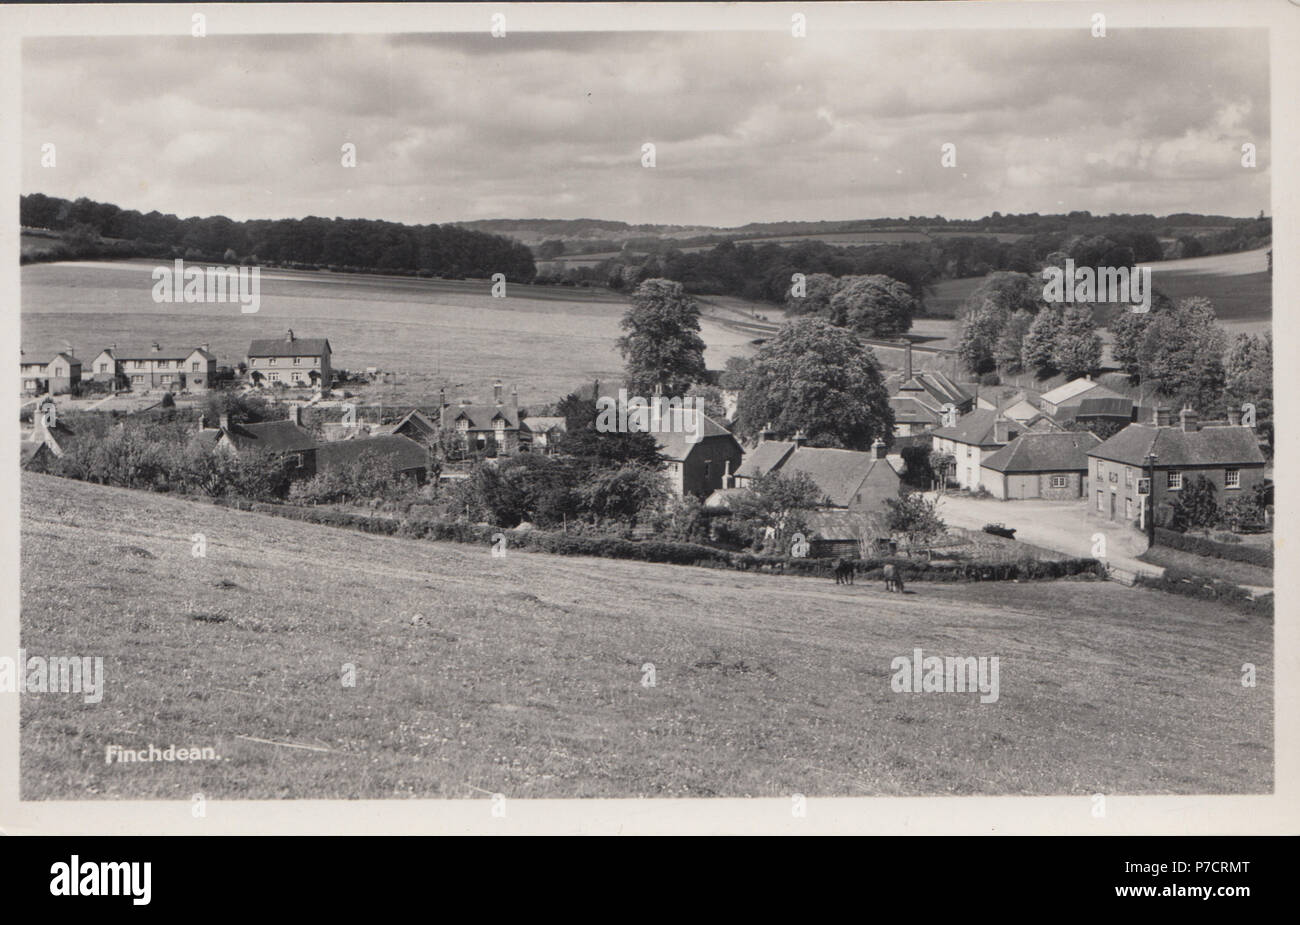 Vintage Fotografia di Finchdean, Hampshire, Regno Unito Foto Stock